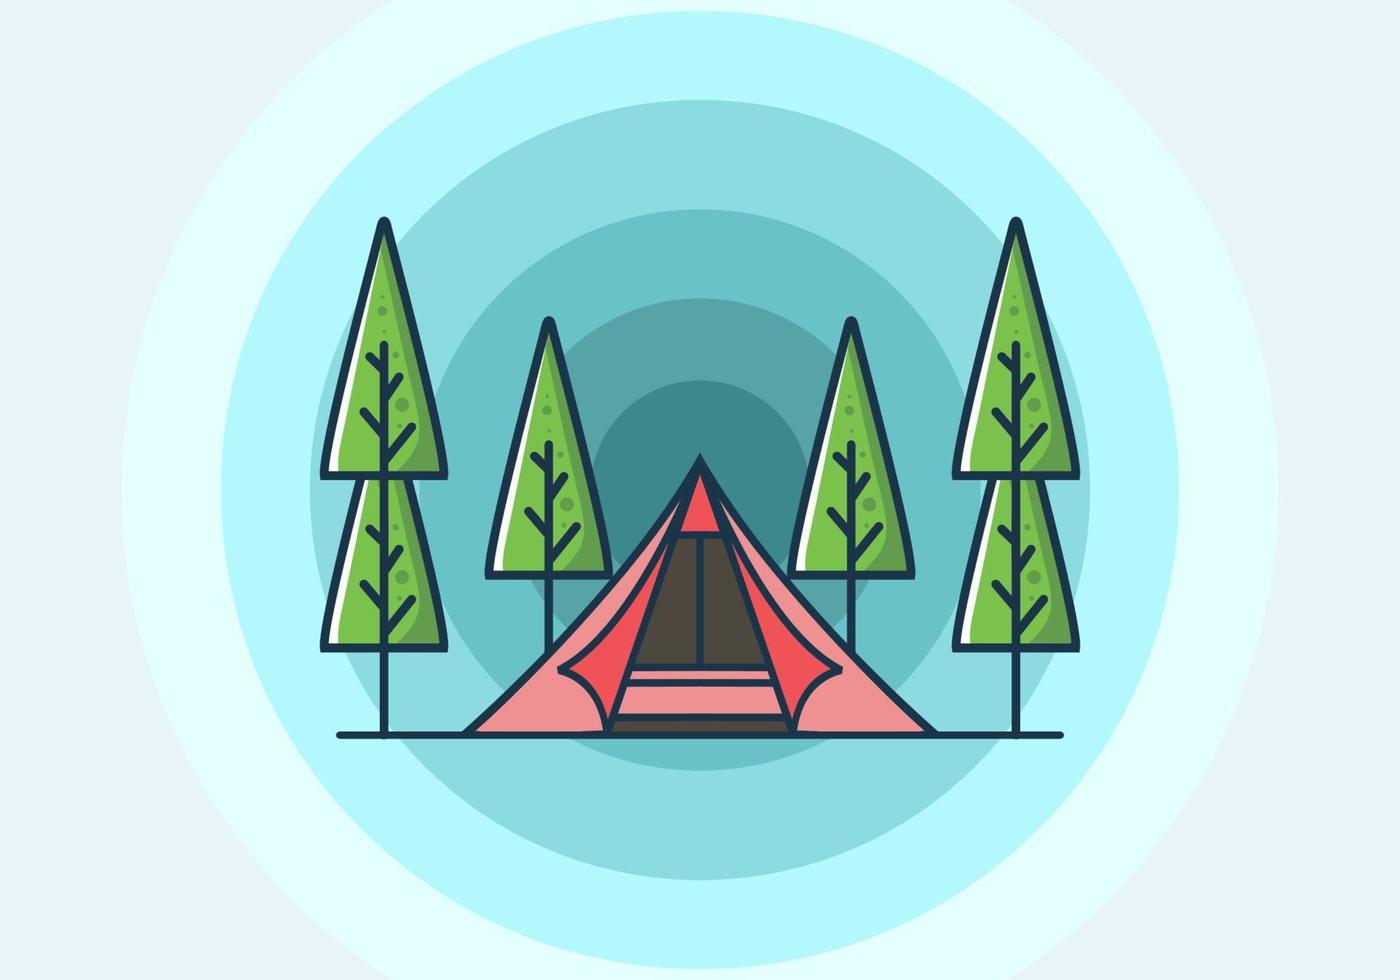 driehoek tent camping vlakke afbeelding vector